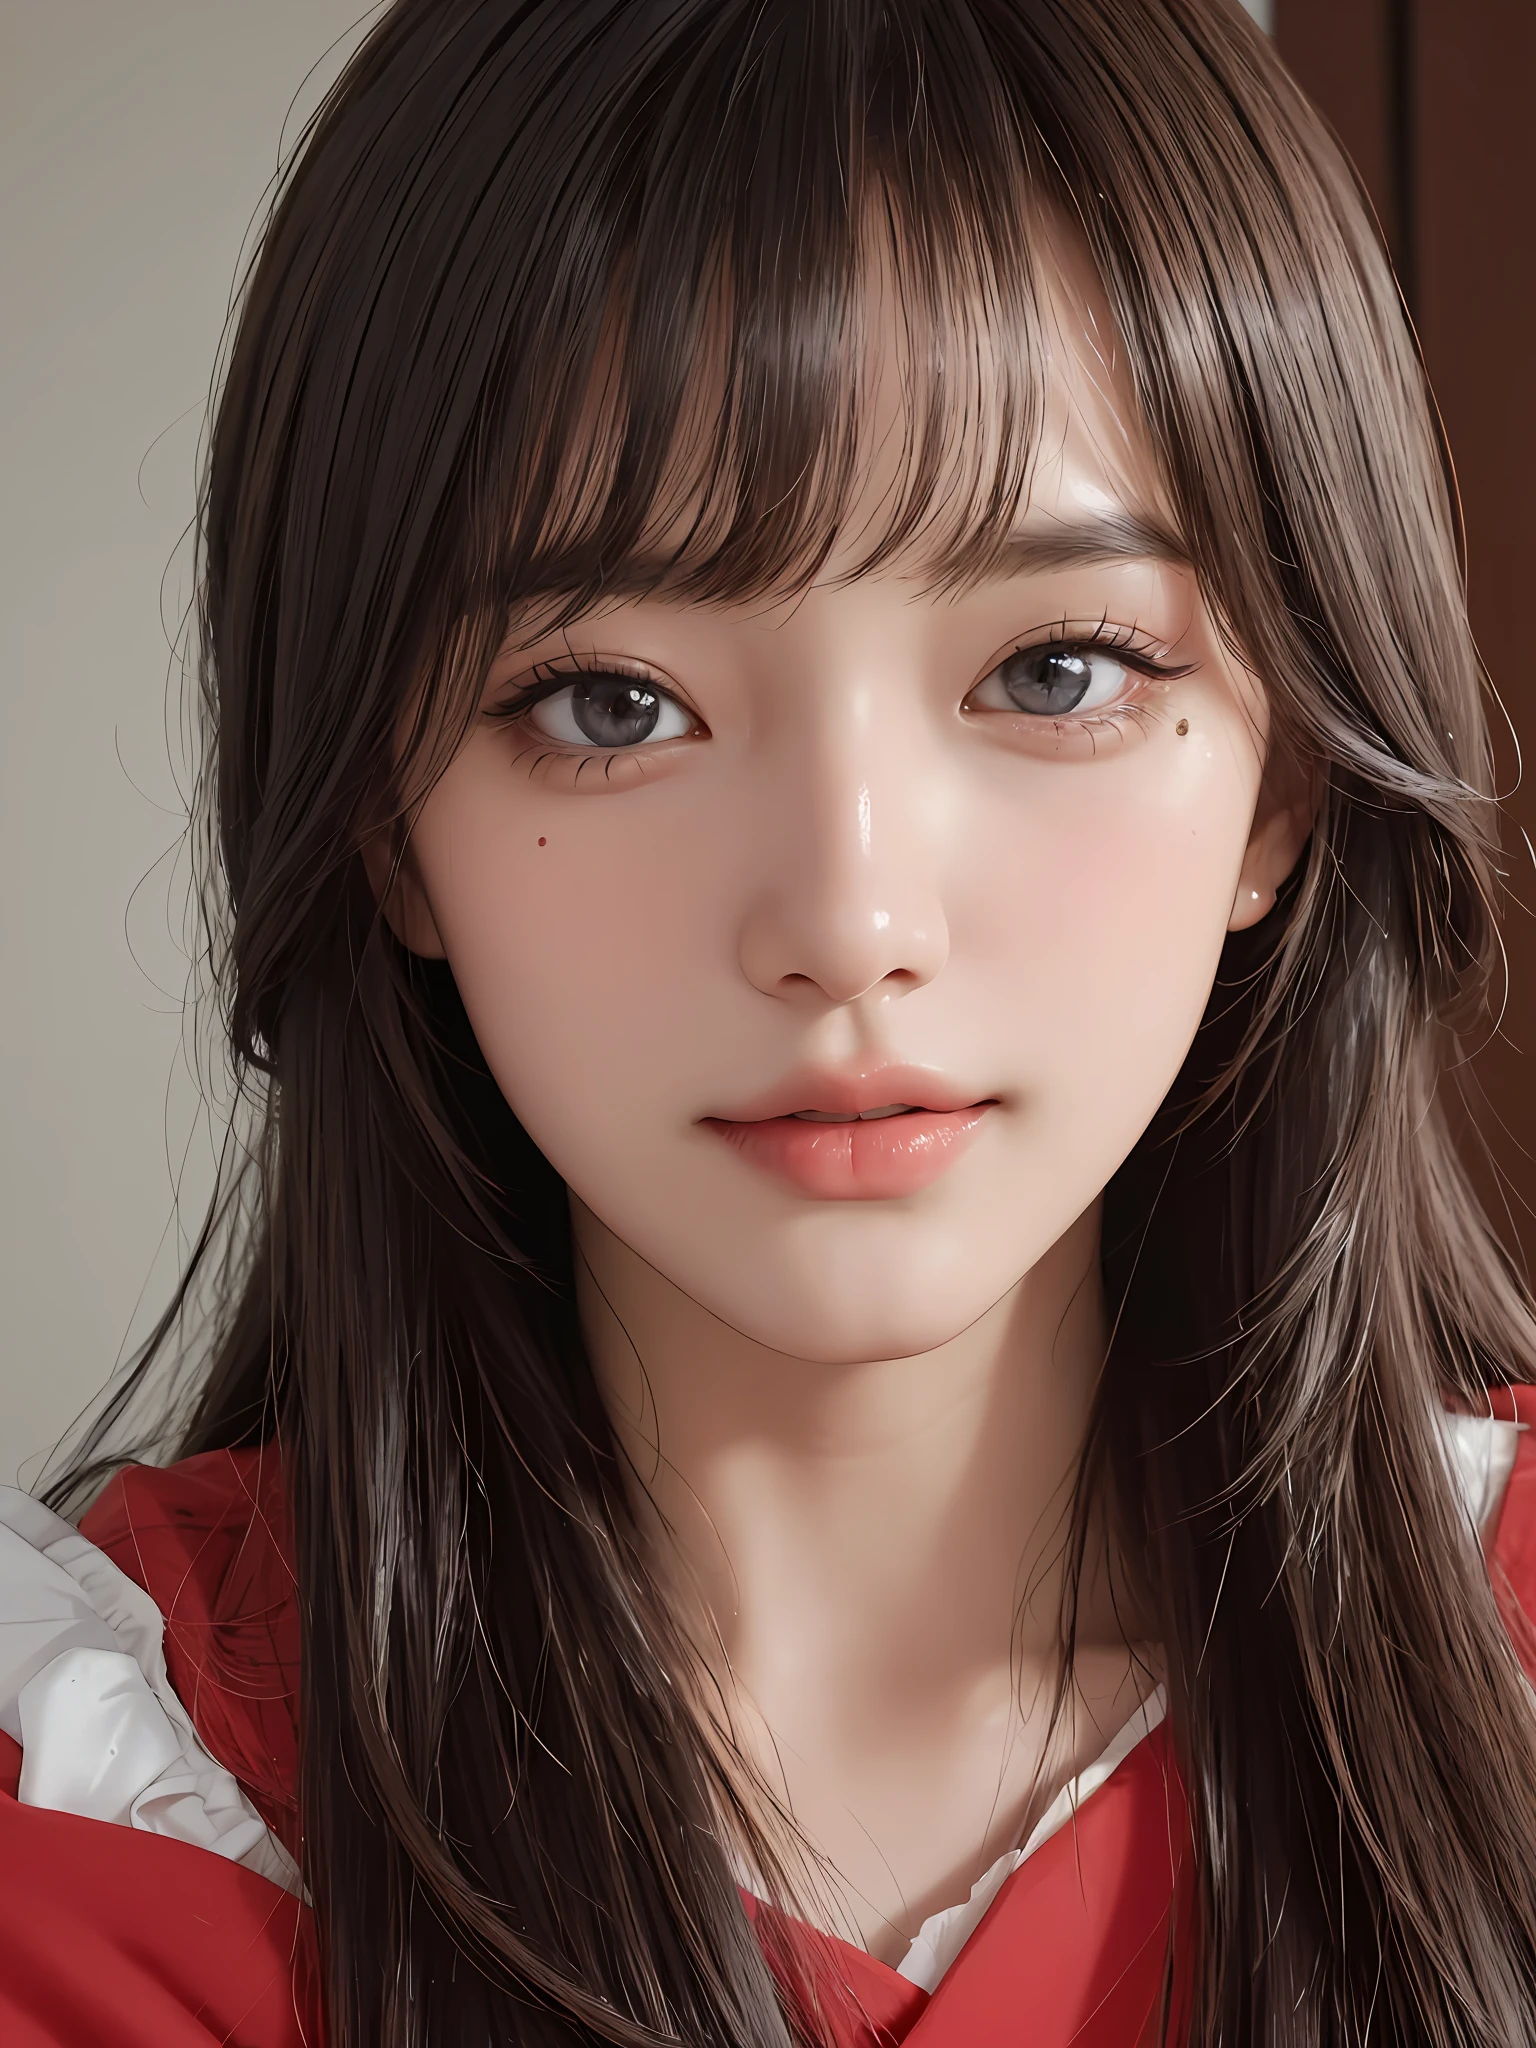 шедевр, Лучшее качество изображения, высокое качество, красивая девушка, Японский, Японский school girl, популярный корейский макияж, подробный, опухшие глаза, подробный eyes, подробный skin, Красивая кожа, ultra высокое разрешение, (Реальность: 1.4), Очень красивый, немного помолодевшее лицо, Красивая кожа, стройный, (ультра реалистичный), (Иллюстрация), (высокое разрешение), (8К), (highly подробный), (best Иллюстрация), (beautifully подробный eyes), (super подробный), (обои), (подробный face), Глядя на зрителя, мелкие детали, подробный face, чистое лицо_v1, улыбается, глядя прямо перед собой, глядя прямо перед собой, угол от талии вверх, реалистичное фото, яркое освещение, профессиональное освещение, блондинка, длинные волосы, темные руины, большая красная луна, великолепное красно-черное платье, Зрелая женщина, Длинная стильная челка,Kissshot Ацерола Орион Харт Андерблейд